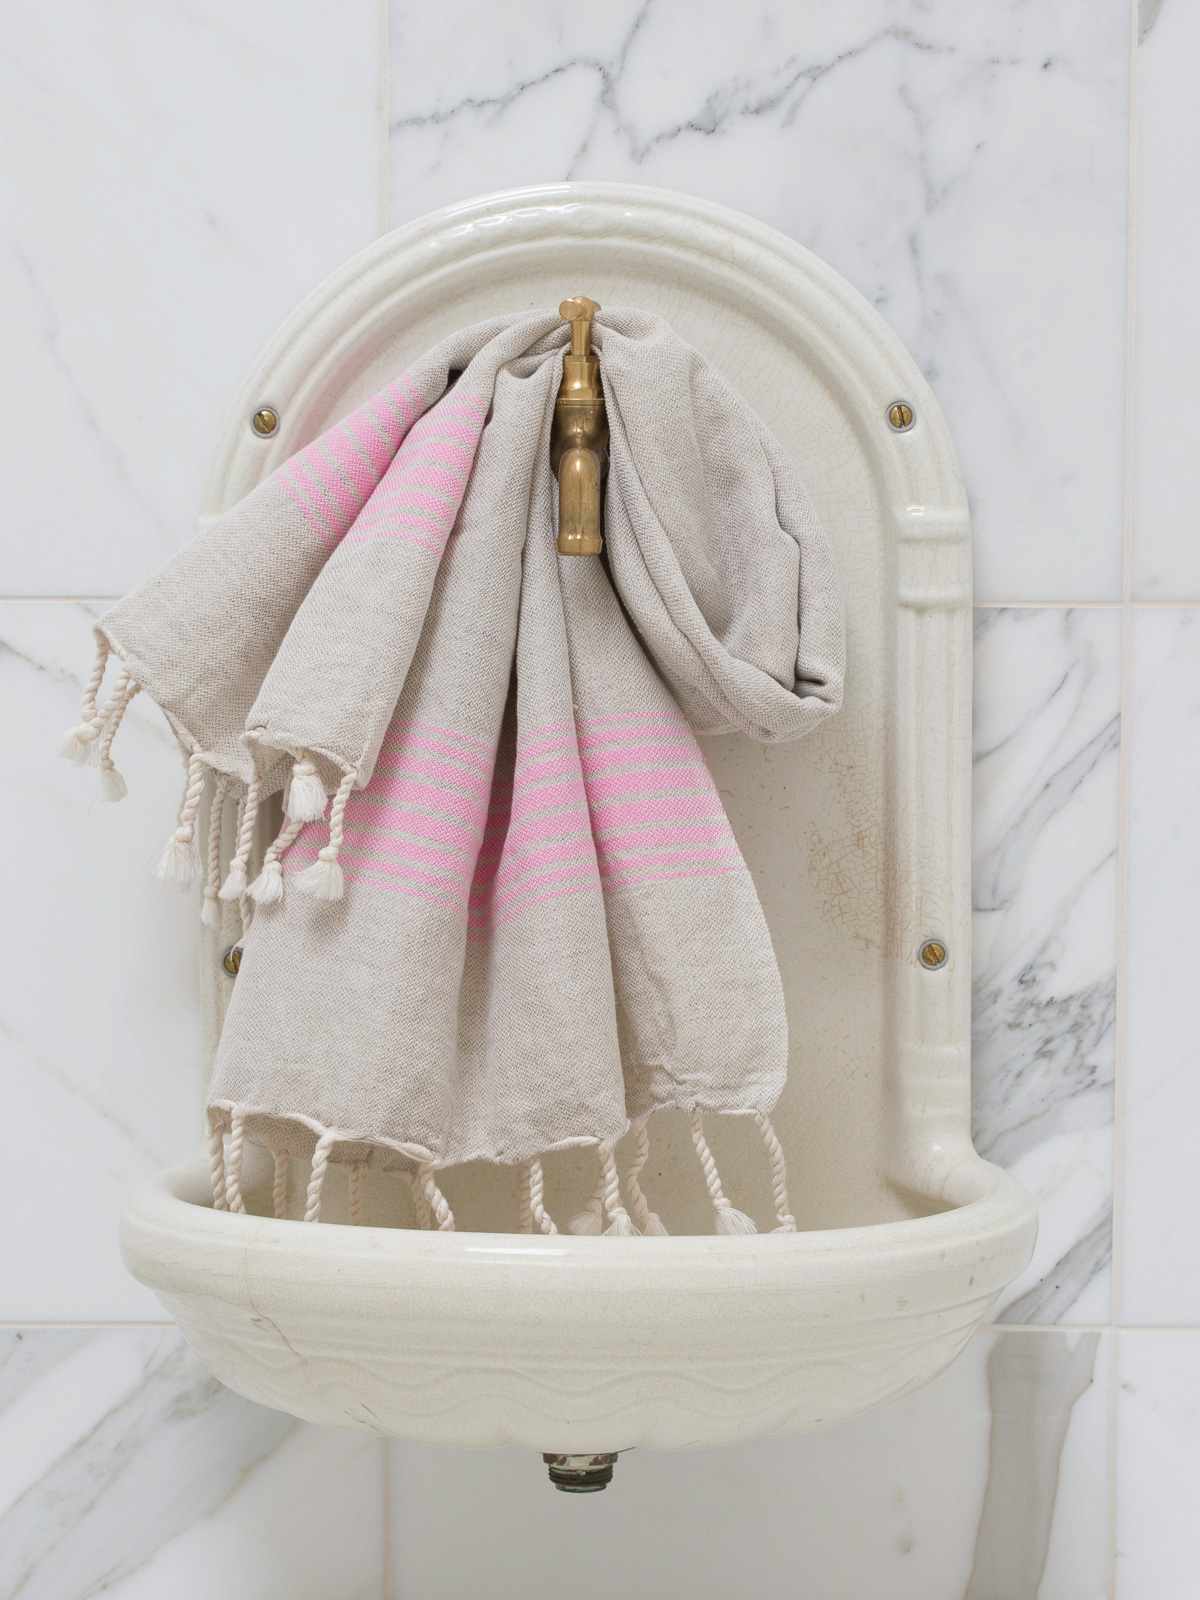 linen hamam towel sorbet pink striped